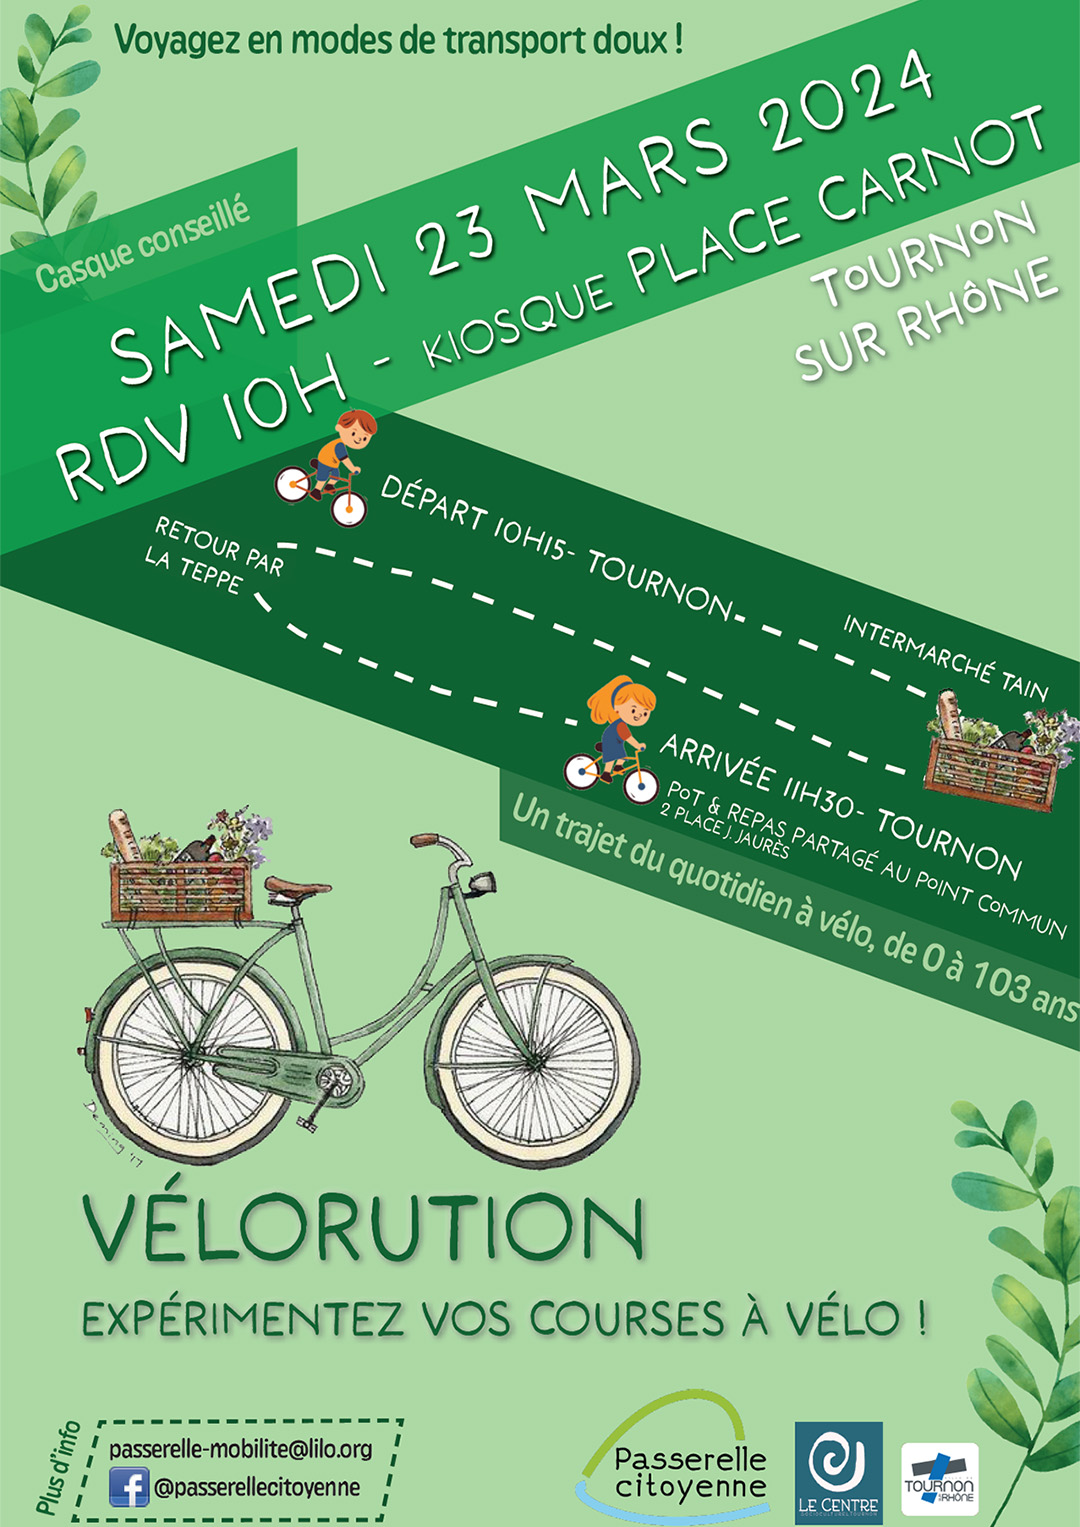 VÉLORUTION. Expérimentez vos courses à vélos. Samedi 23 mars - RDV à 10h au Kiosque Place Carnot